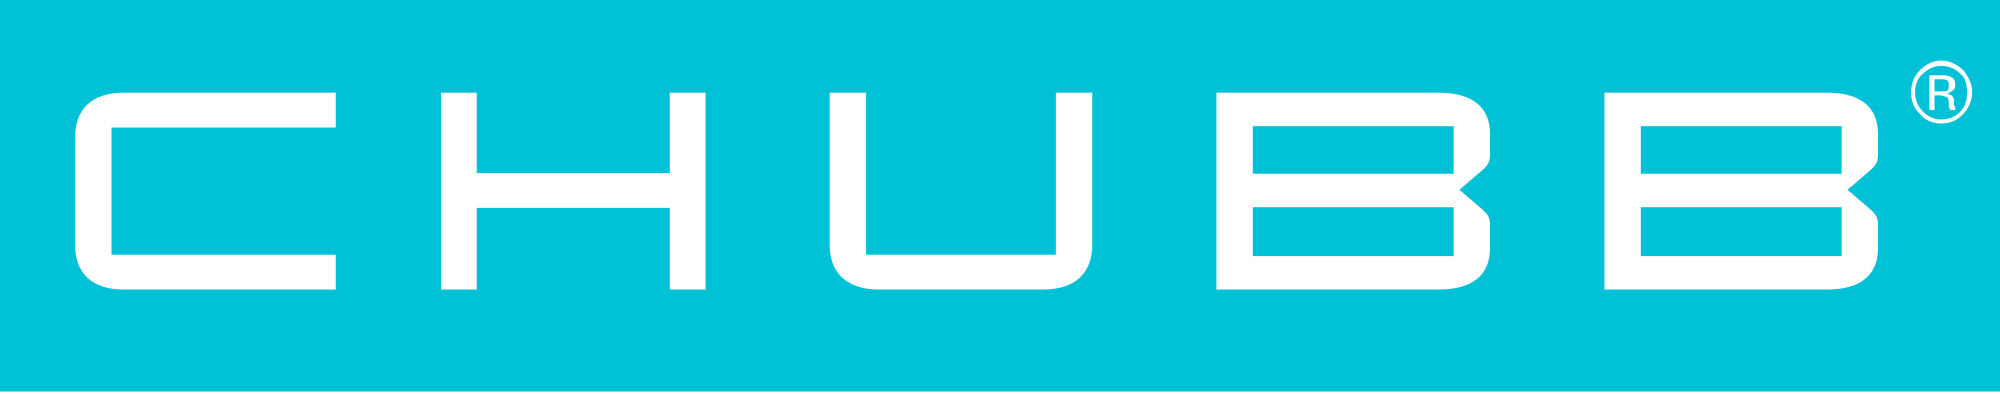 Chubb Logo - File:Chubb-Limited-logo.svg - Wikimedia Commons